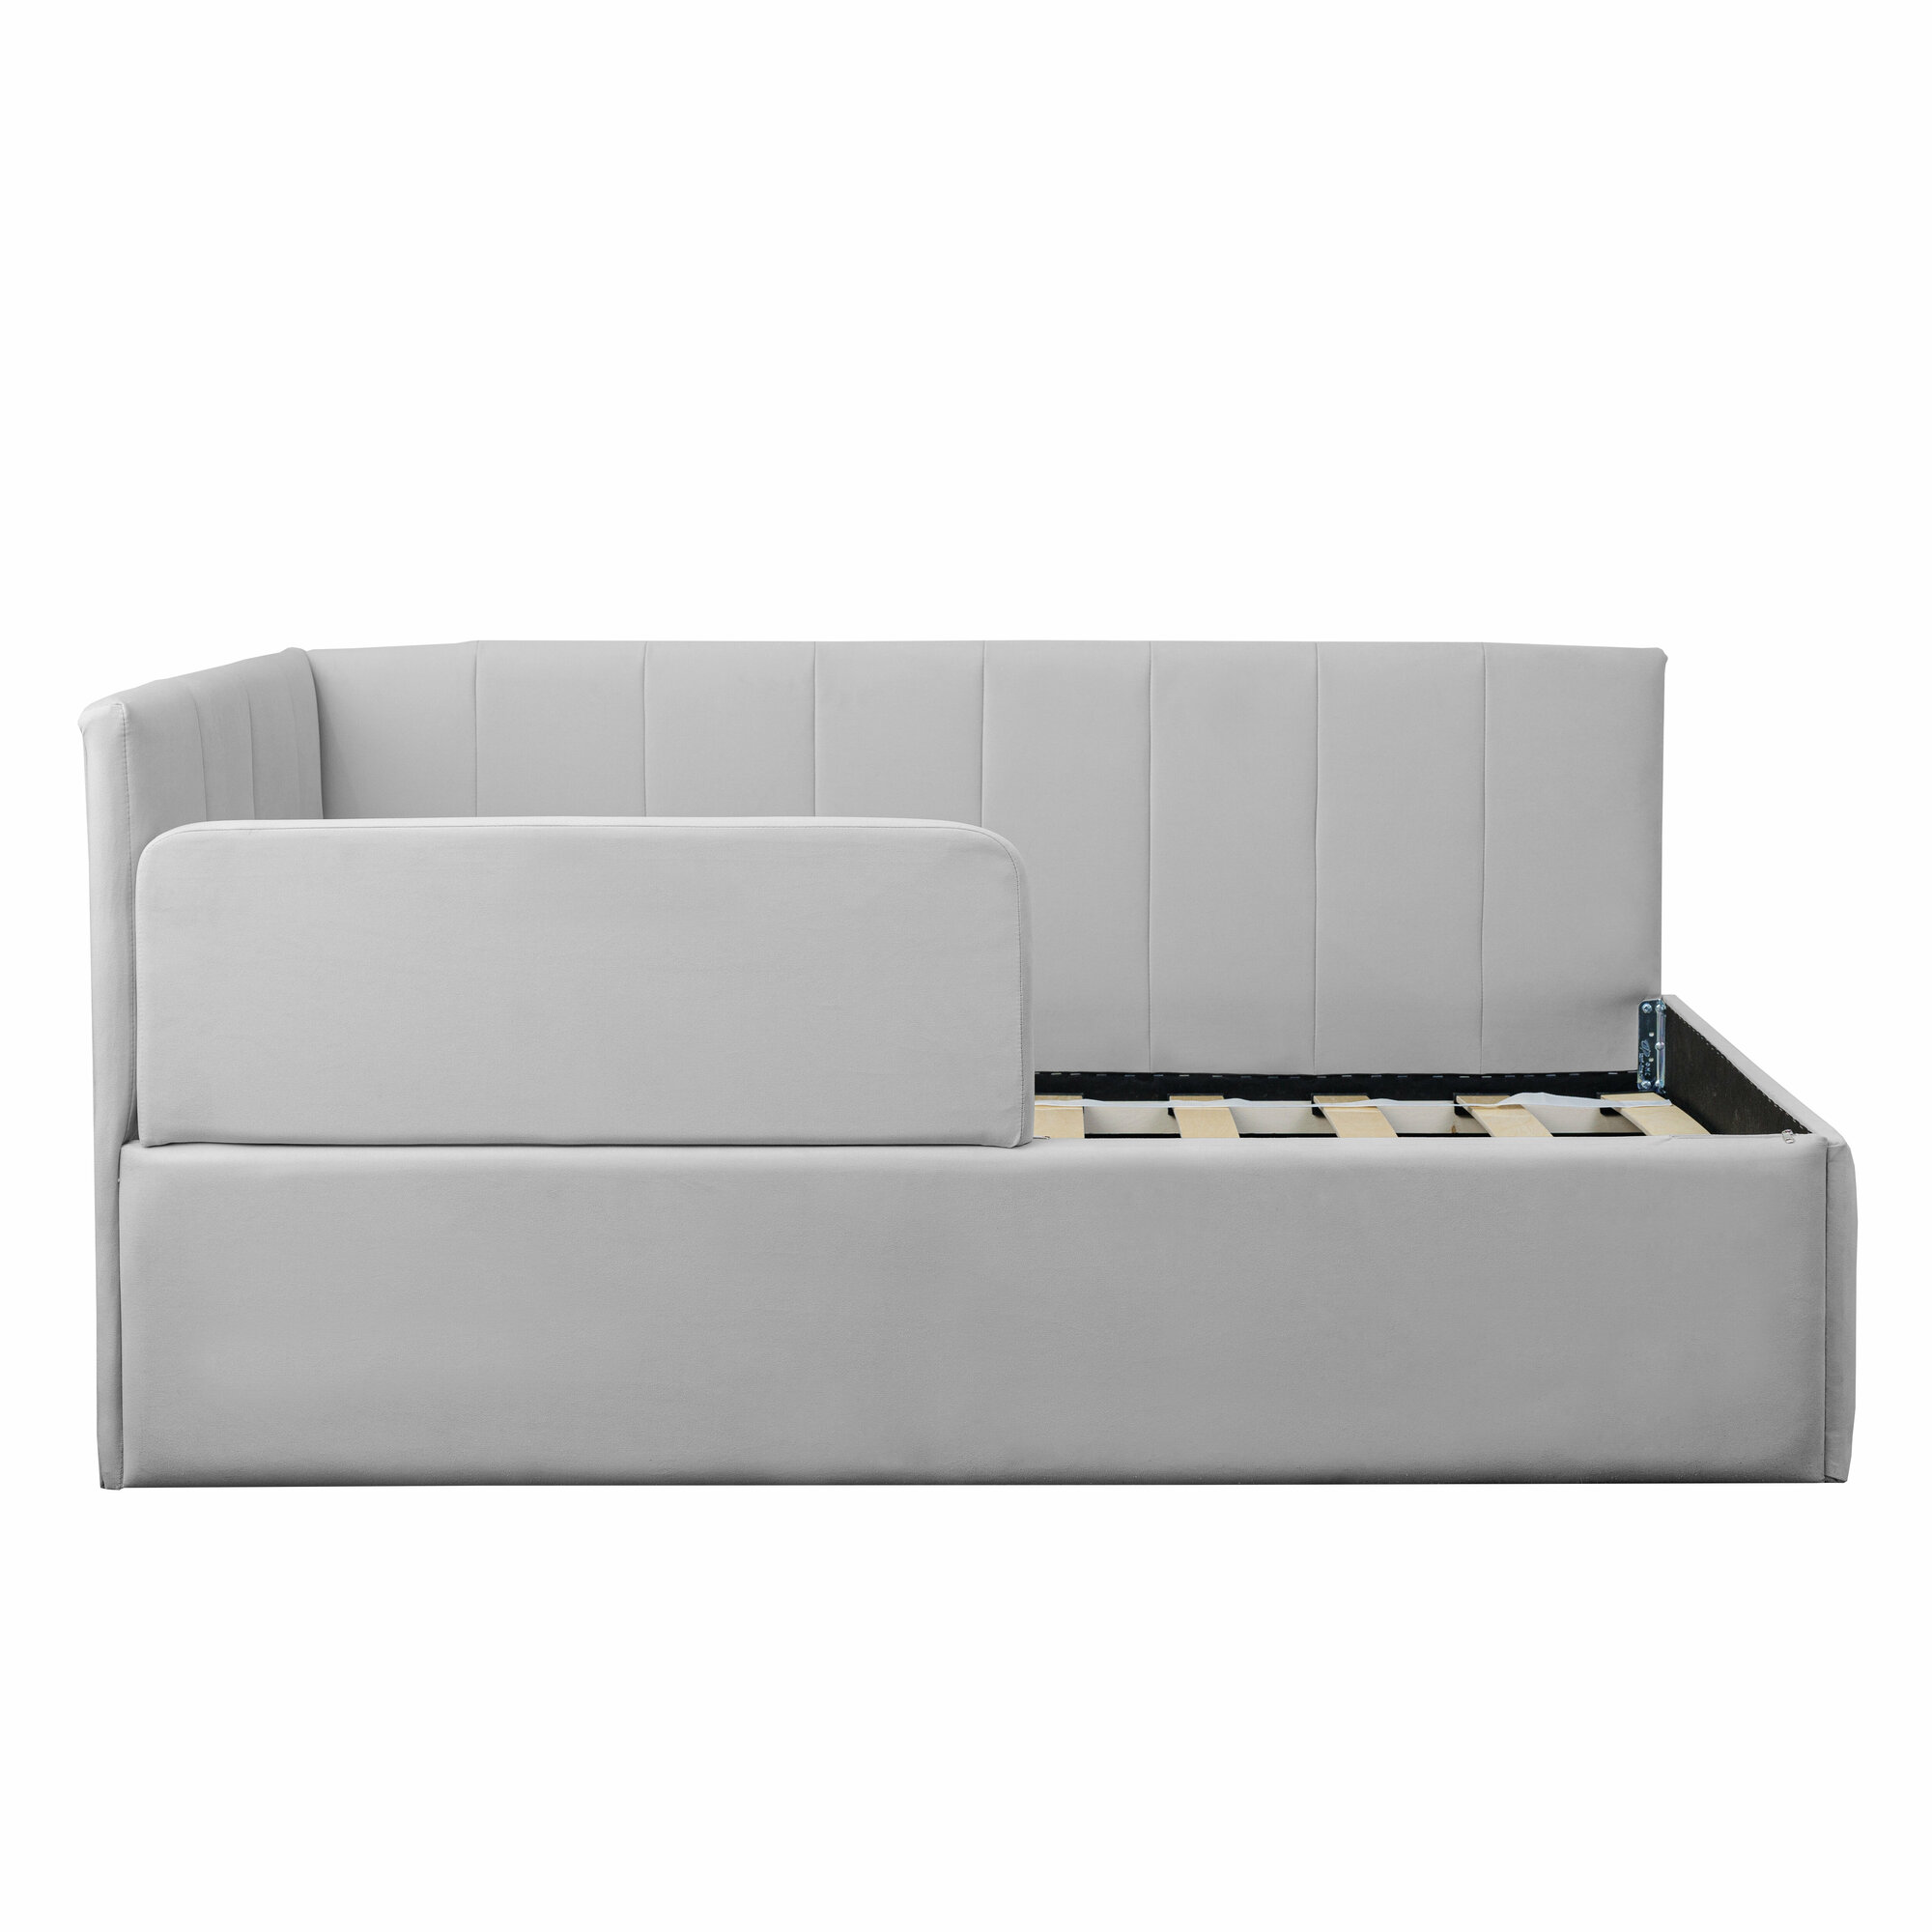 Кровать-диван Хагги 180*90 серая с матрасом, без ящика для хранения